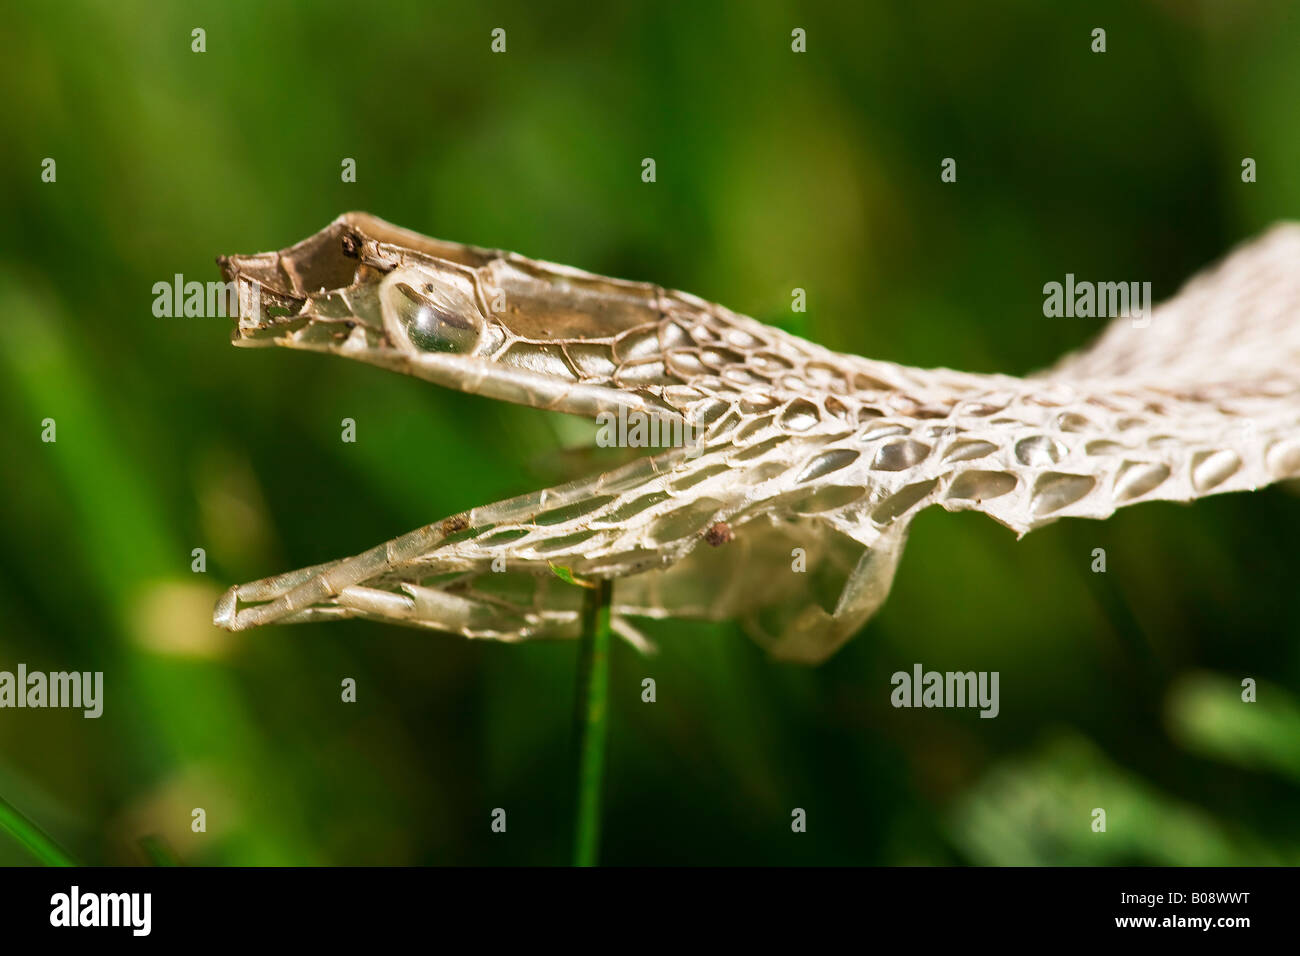 Nahaufnahme Bild der Haut Kopf einer Schlange in der Wiese den Mund ist geöffnet und das Auge Schild deutlich sichtbar Stockfoto